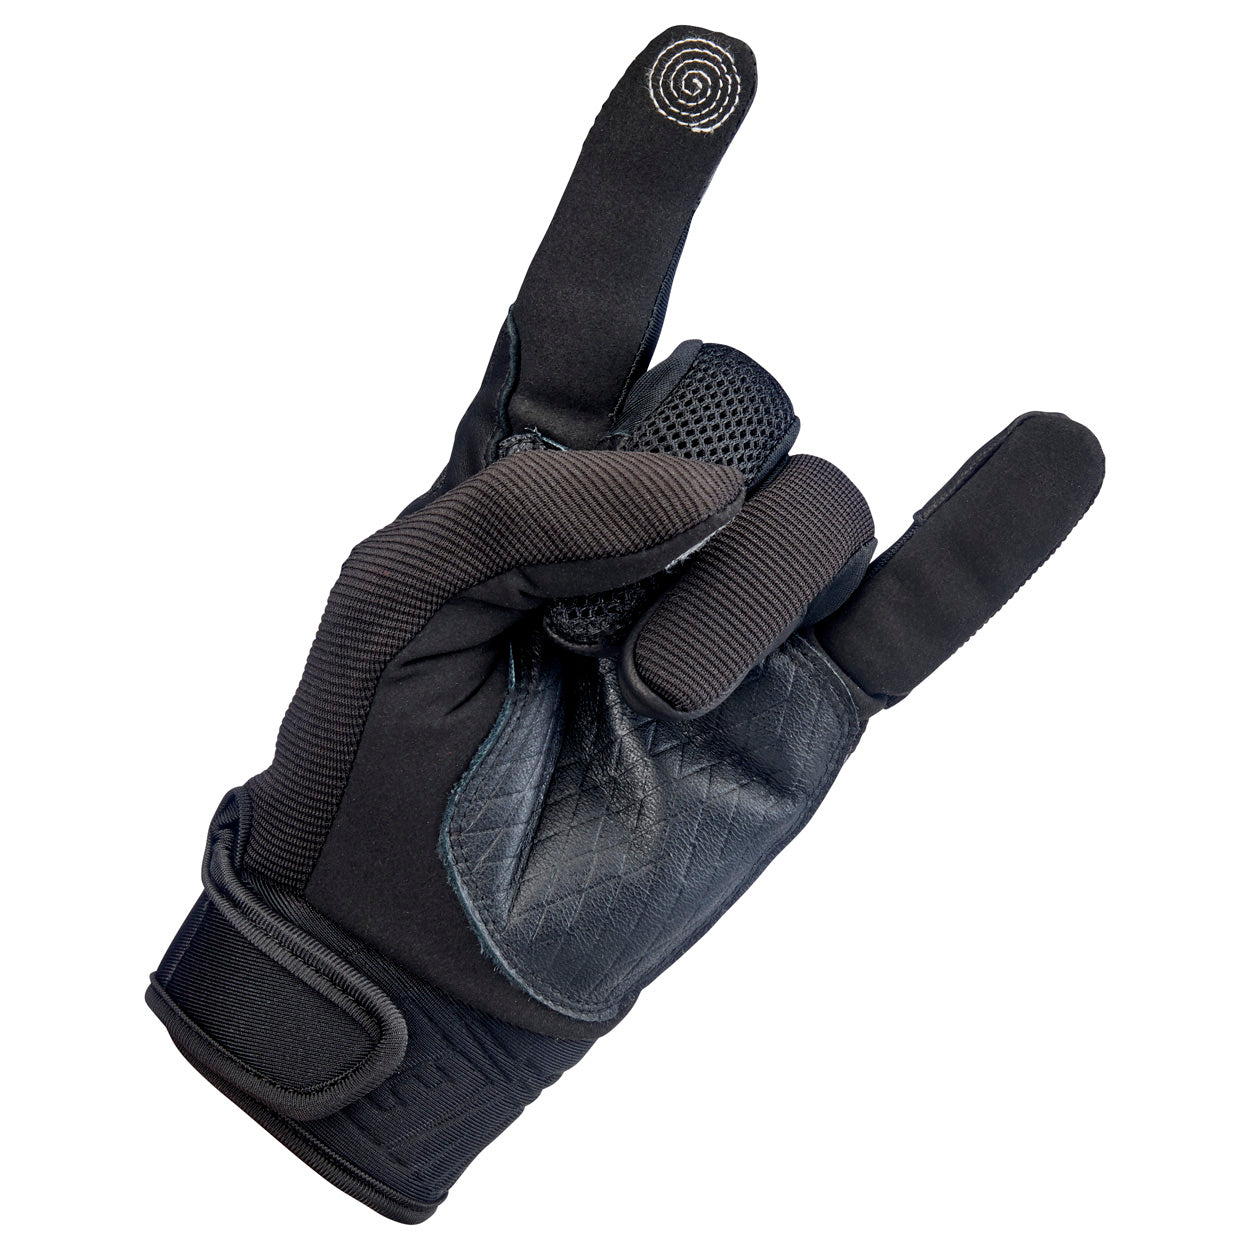 Baja Gloves - Black Out